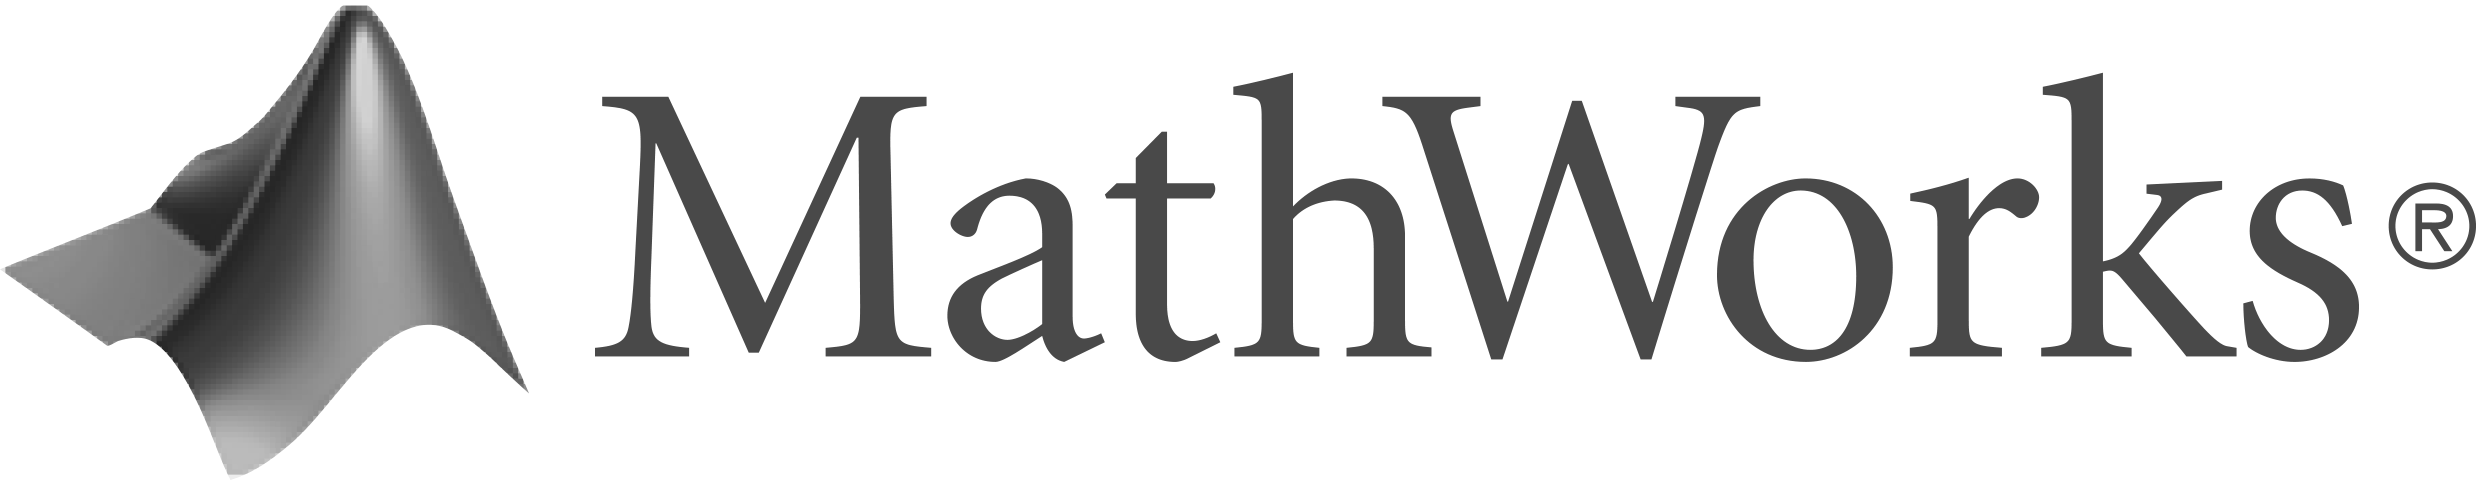 Mathworks logo greyscale